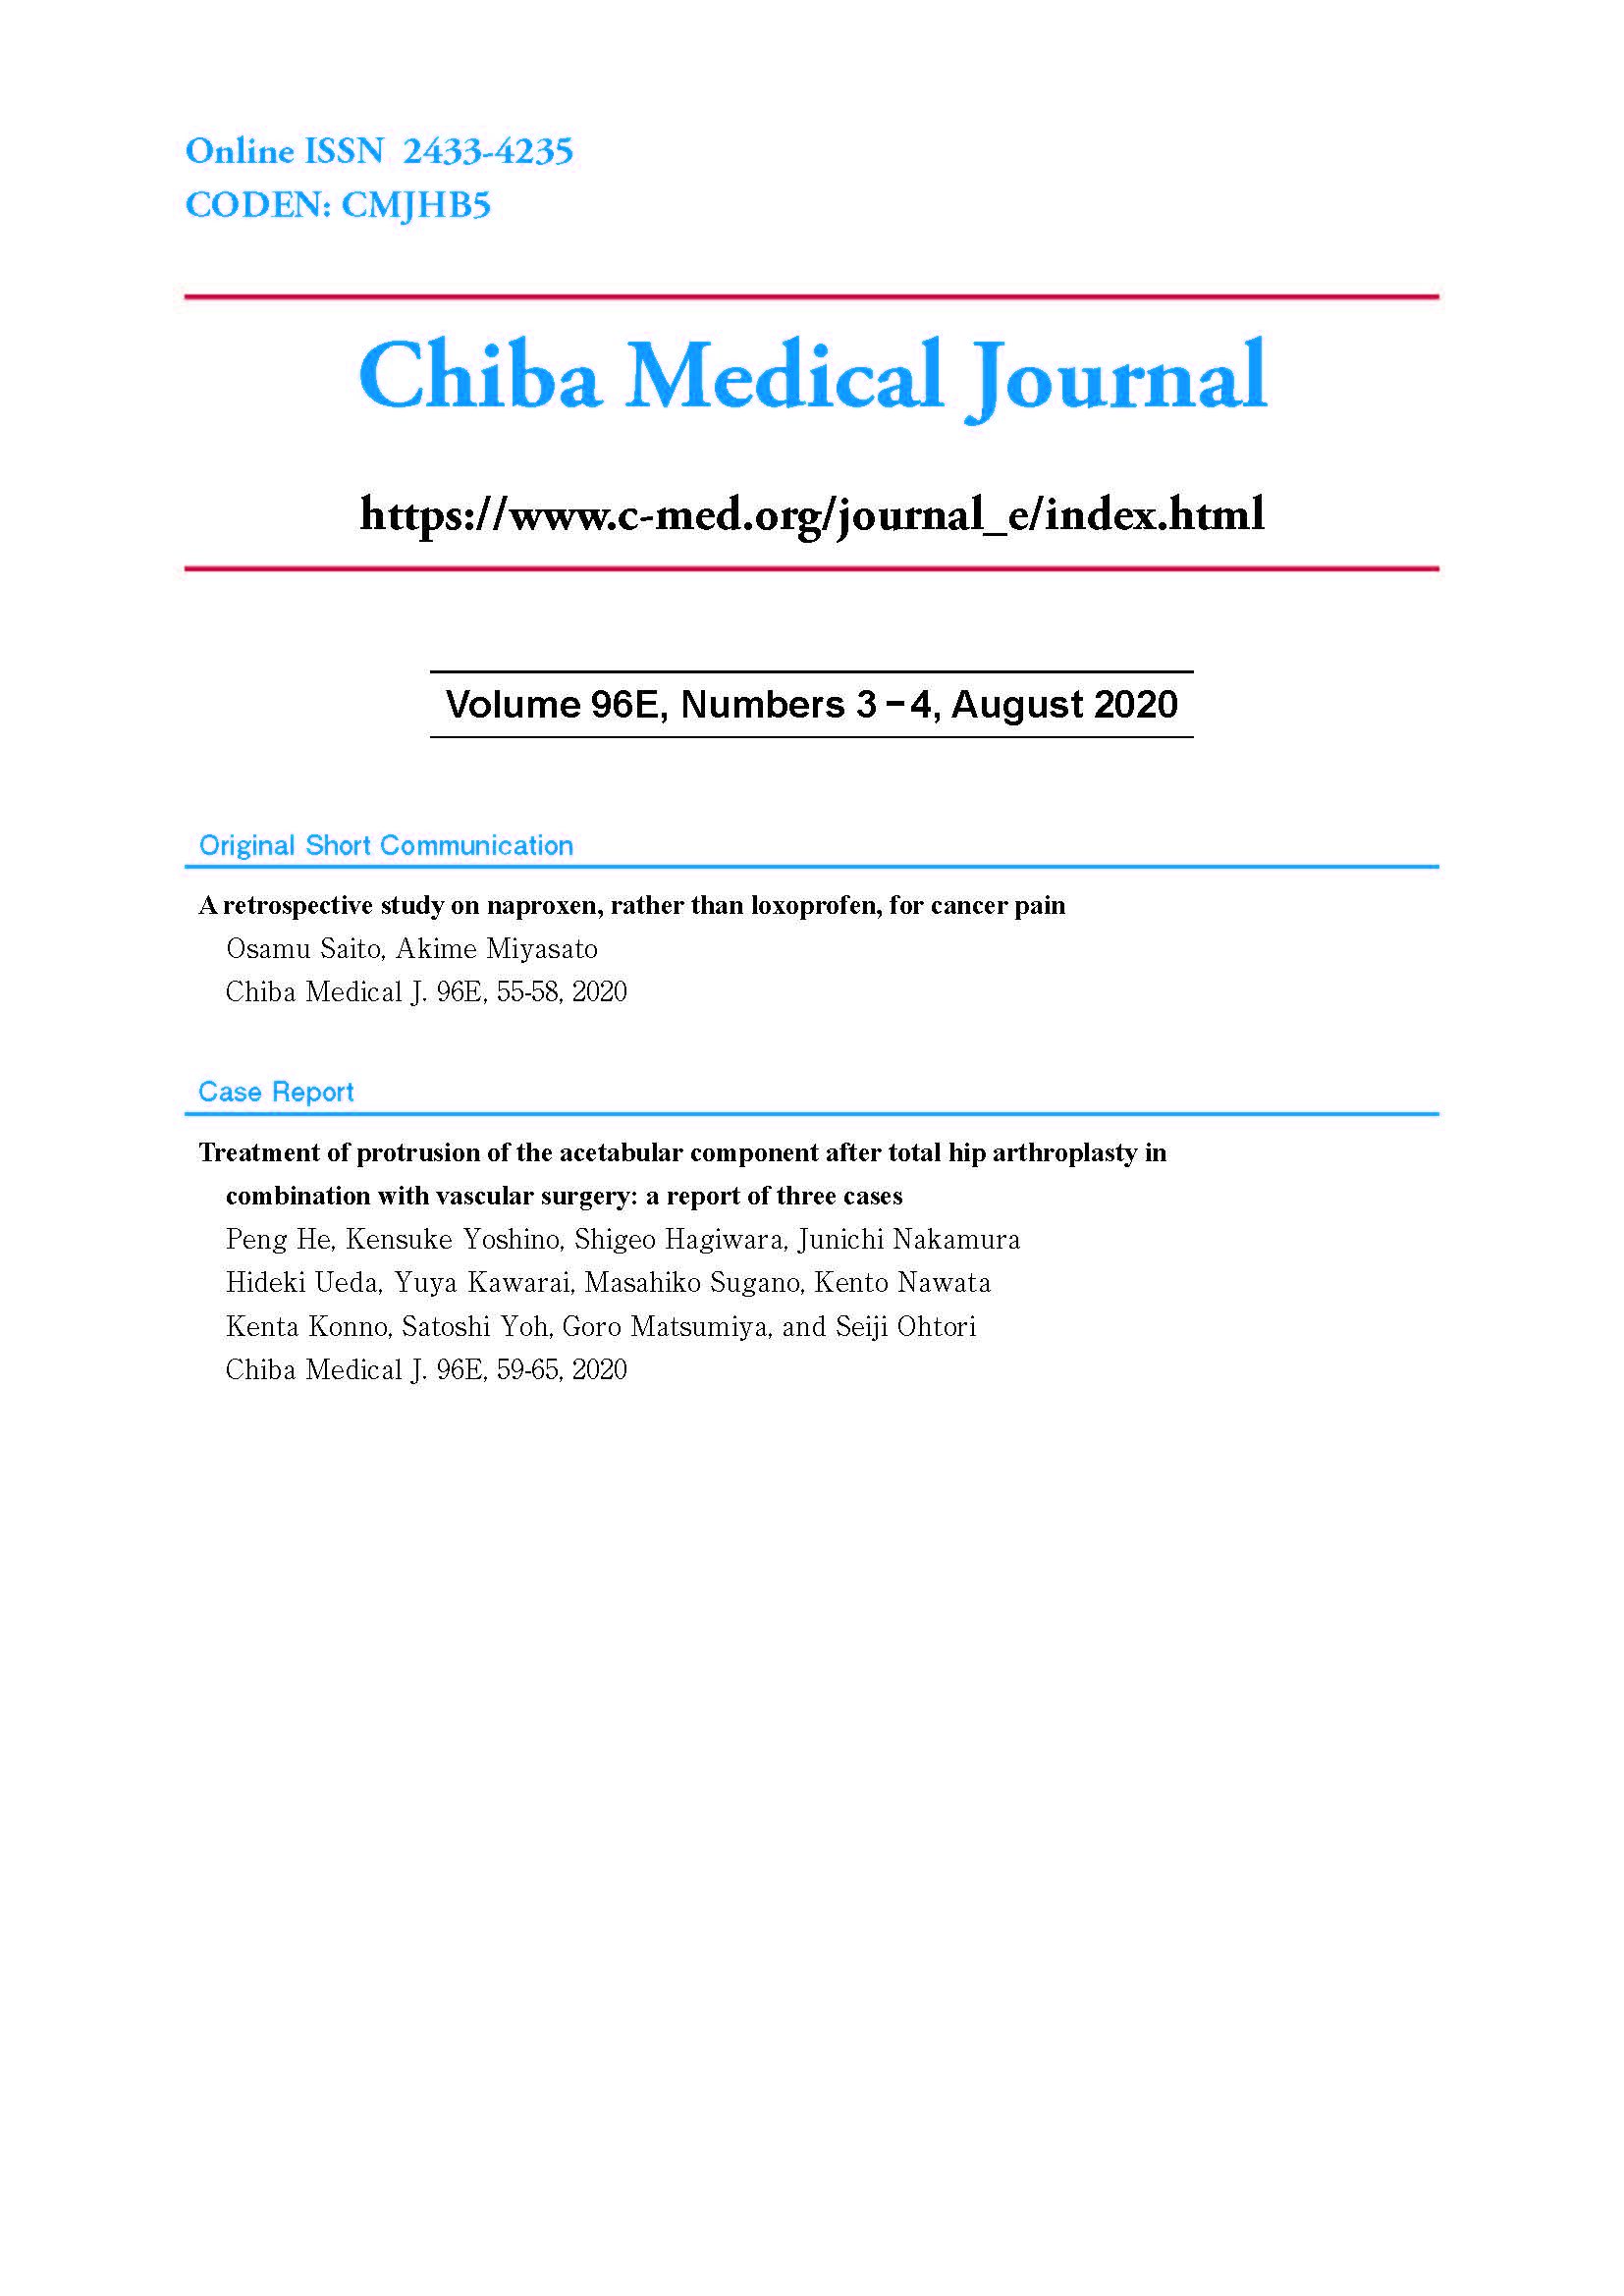 Chiba Medical Journal ; Vol.96E No.3,4